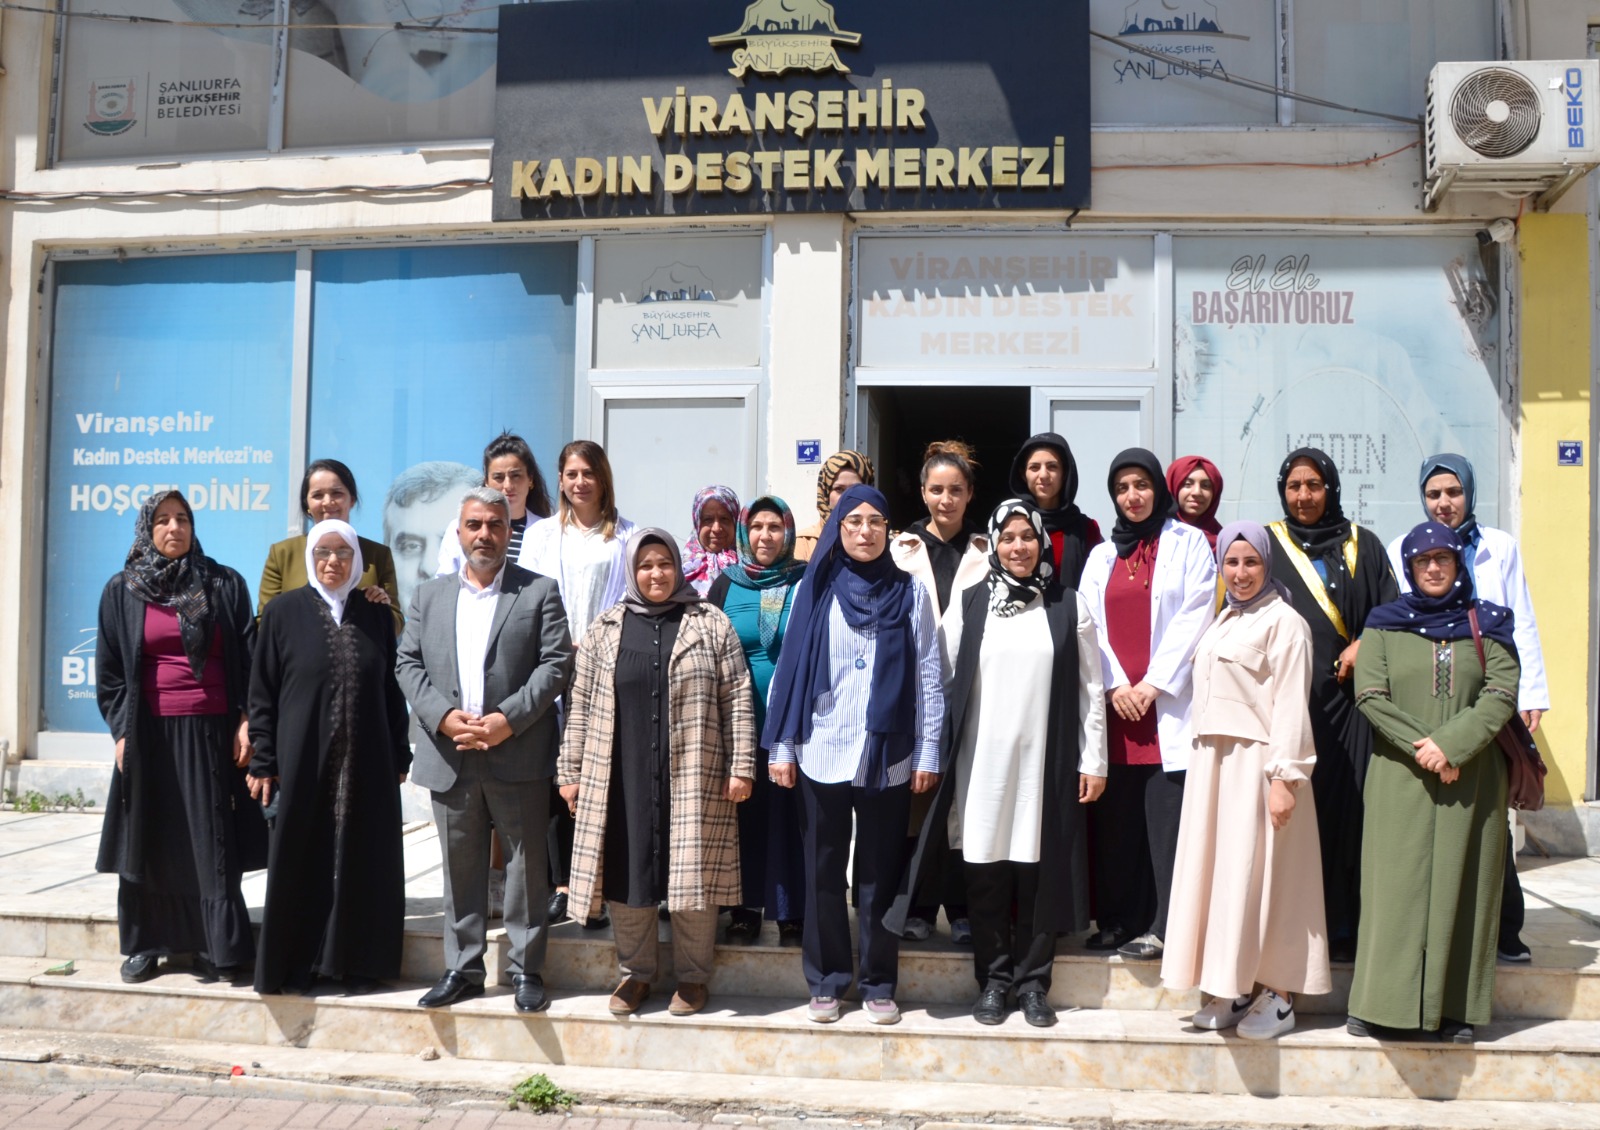 Seçim çalışmaları kapsamında Viranşehir Kadın Destek Merkezi’ne ziyaret eden Şanlıurfa AK Parti Milletvekili adayı Cevahir Asuman Yazmacı,